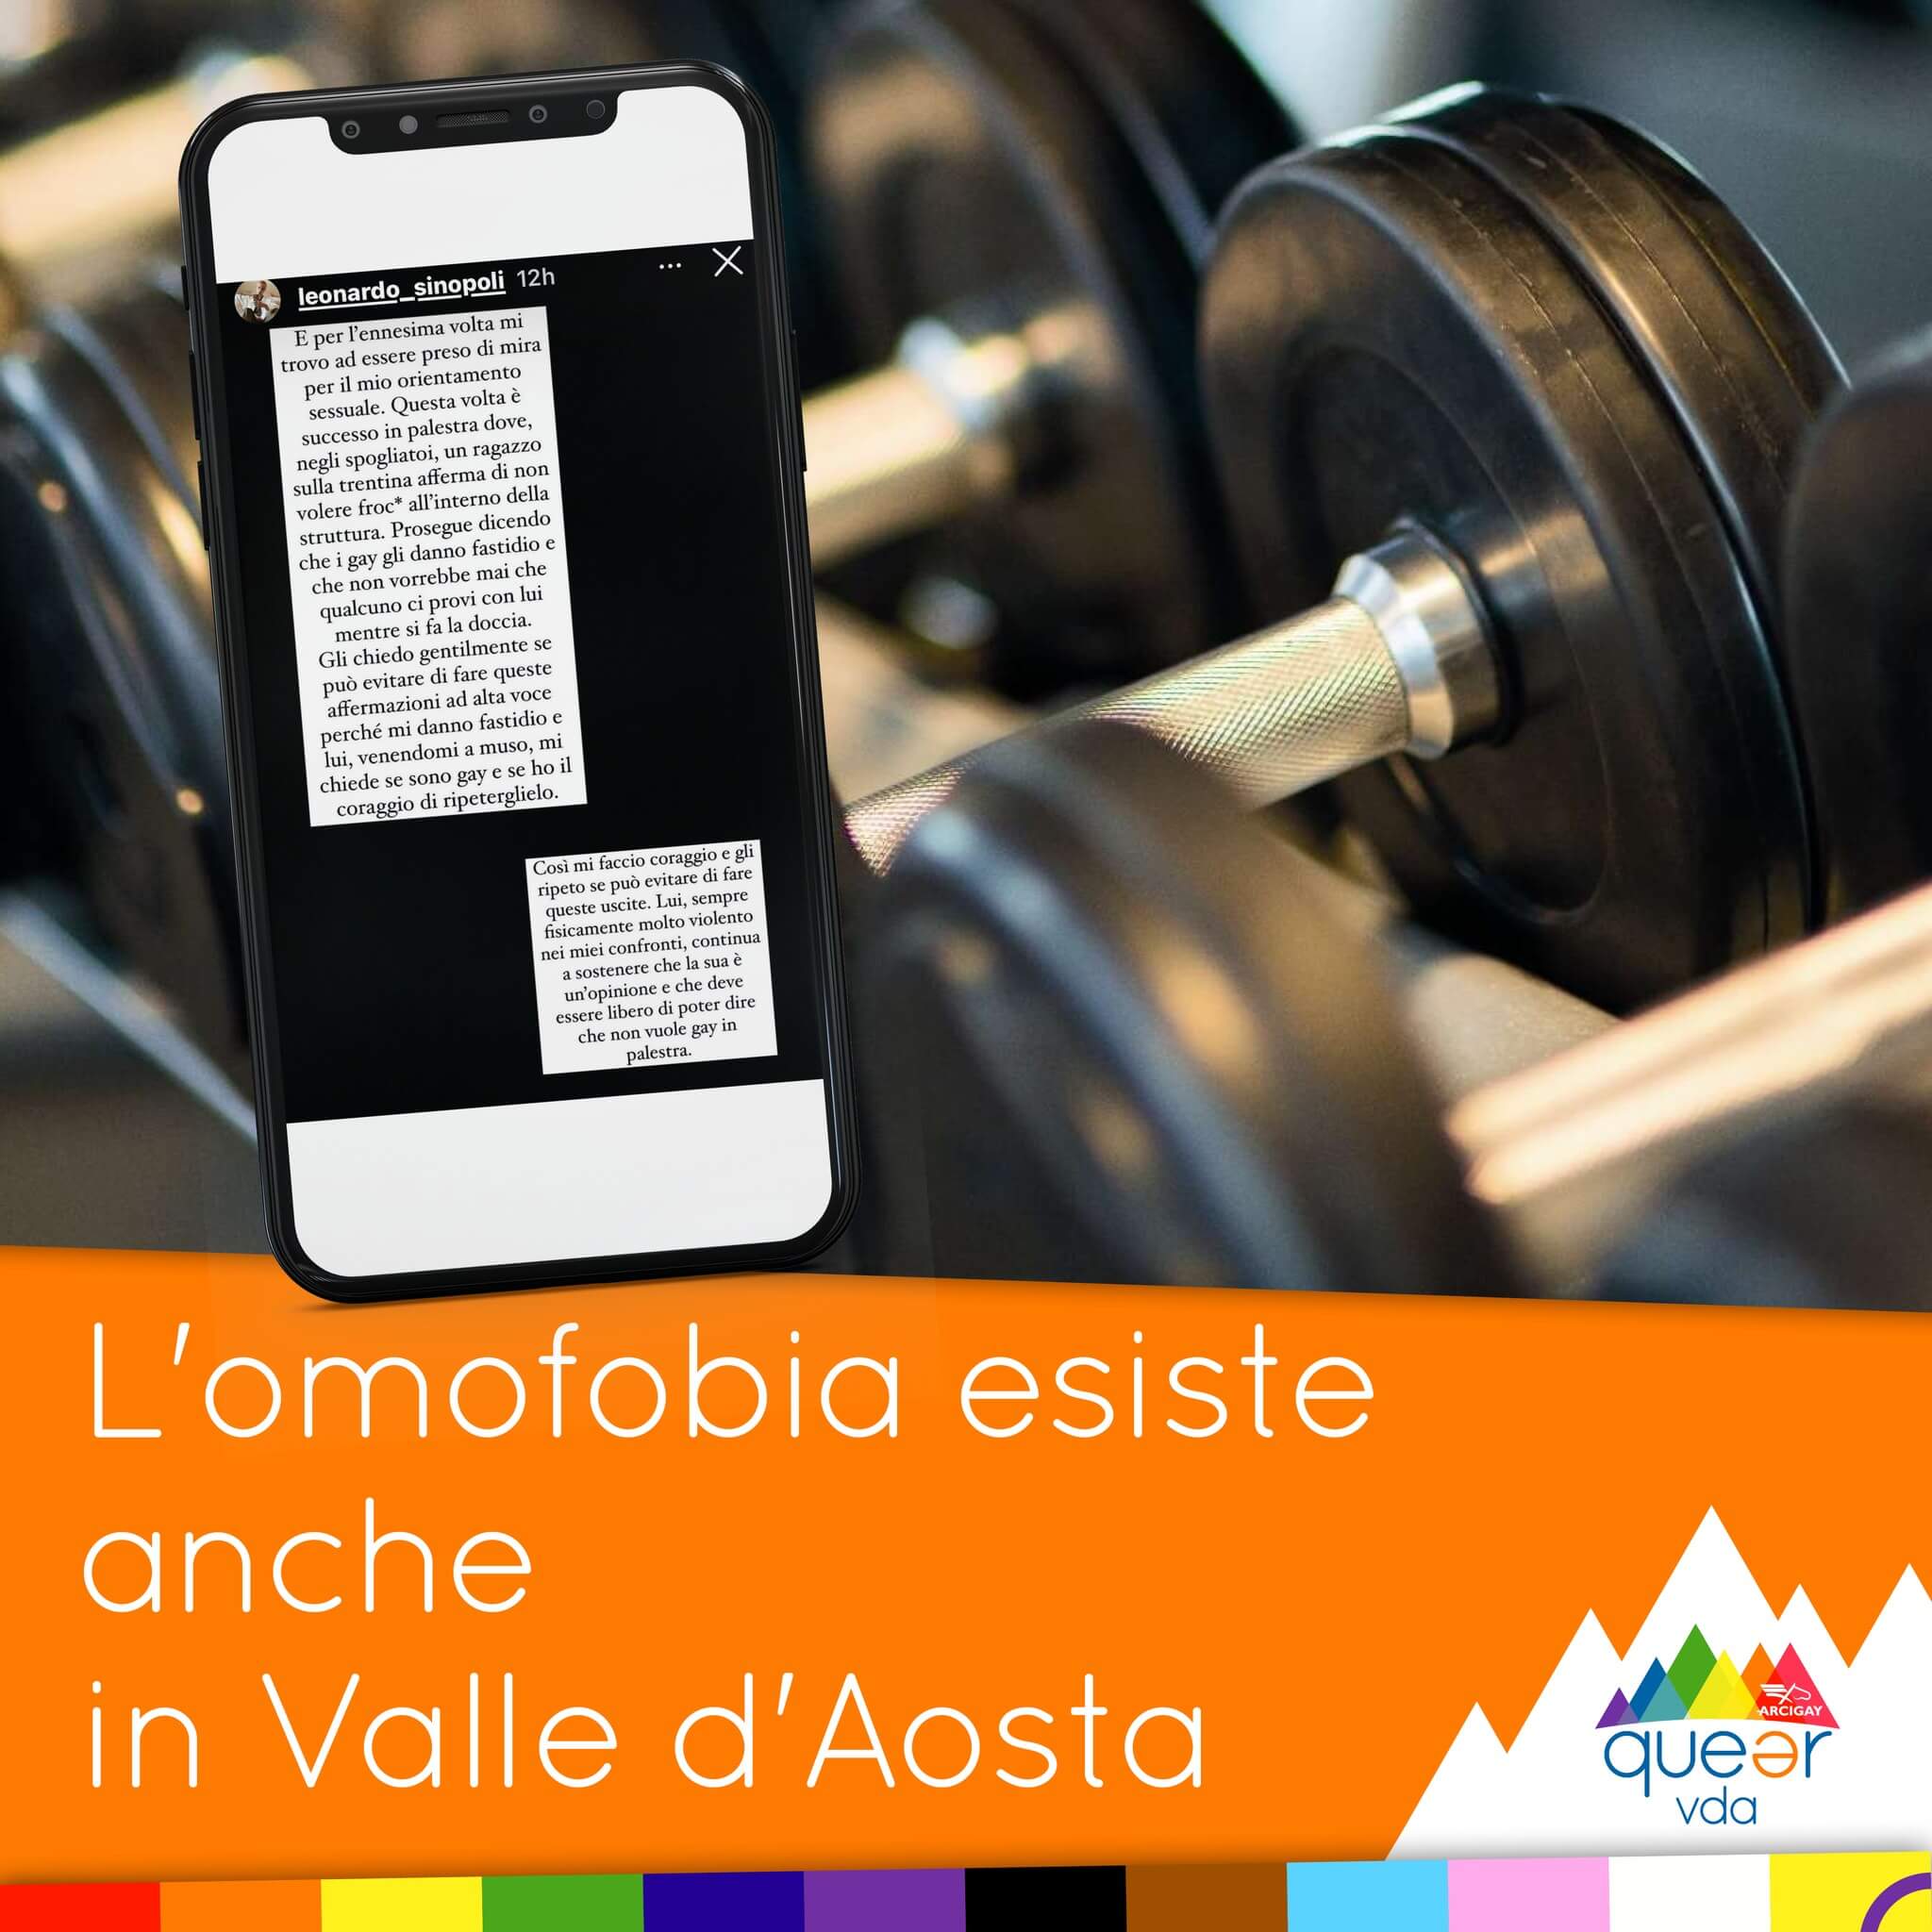 Omofobia in Valle d’Aosta: "No gay in palestra". Arcigay invita a denunciare - Valle dAosta 3 - Gay.it